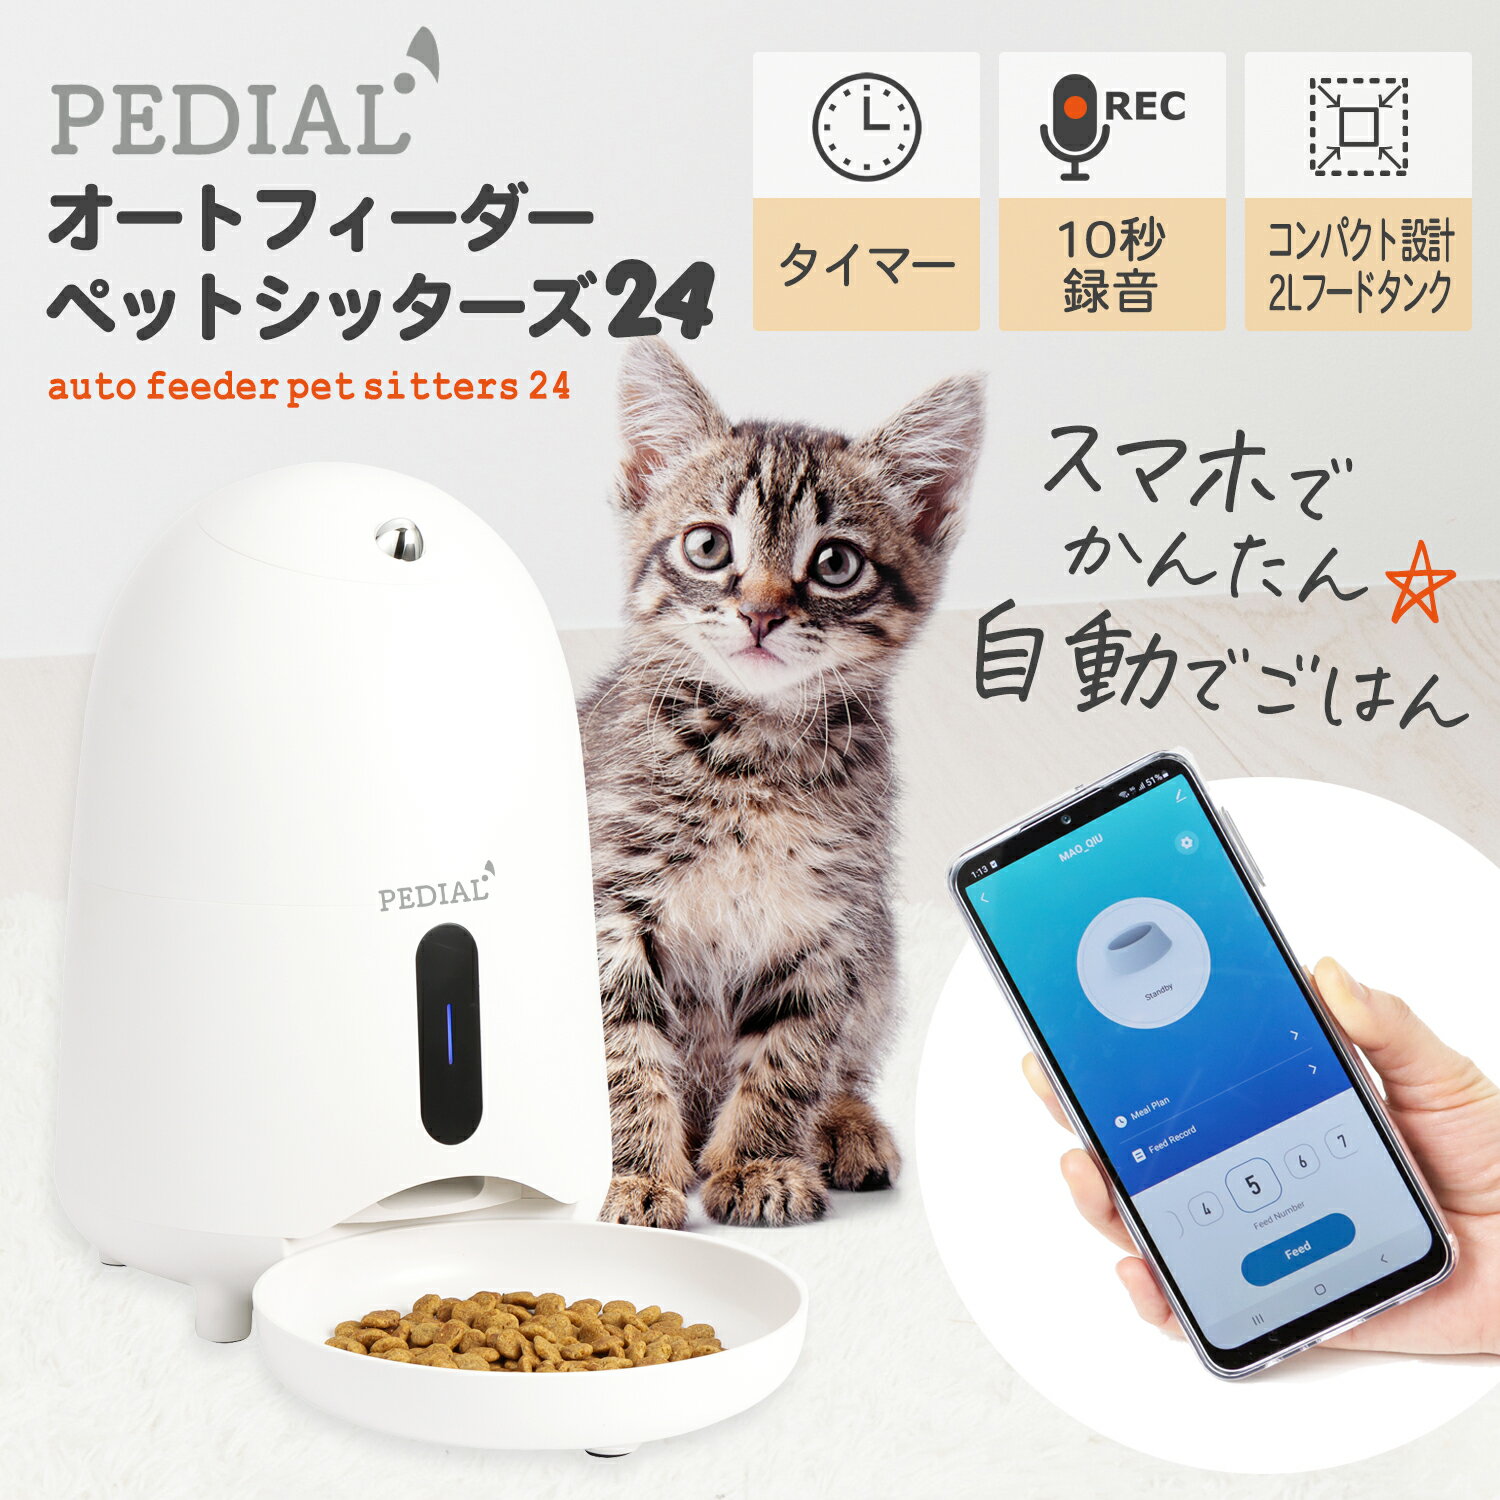 自動給餌器 自動給餌器 2L 猫 小型犬 タイマー Wi-Fi ドライフード ペットフード お留守番 ペット 給餌器 自動給餌機 フィーダー 給餌機 自動餌やり機 日本メーカー PEDIAL/ペディアル LEHIFF100 プレゼント